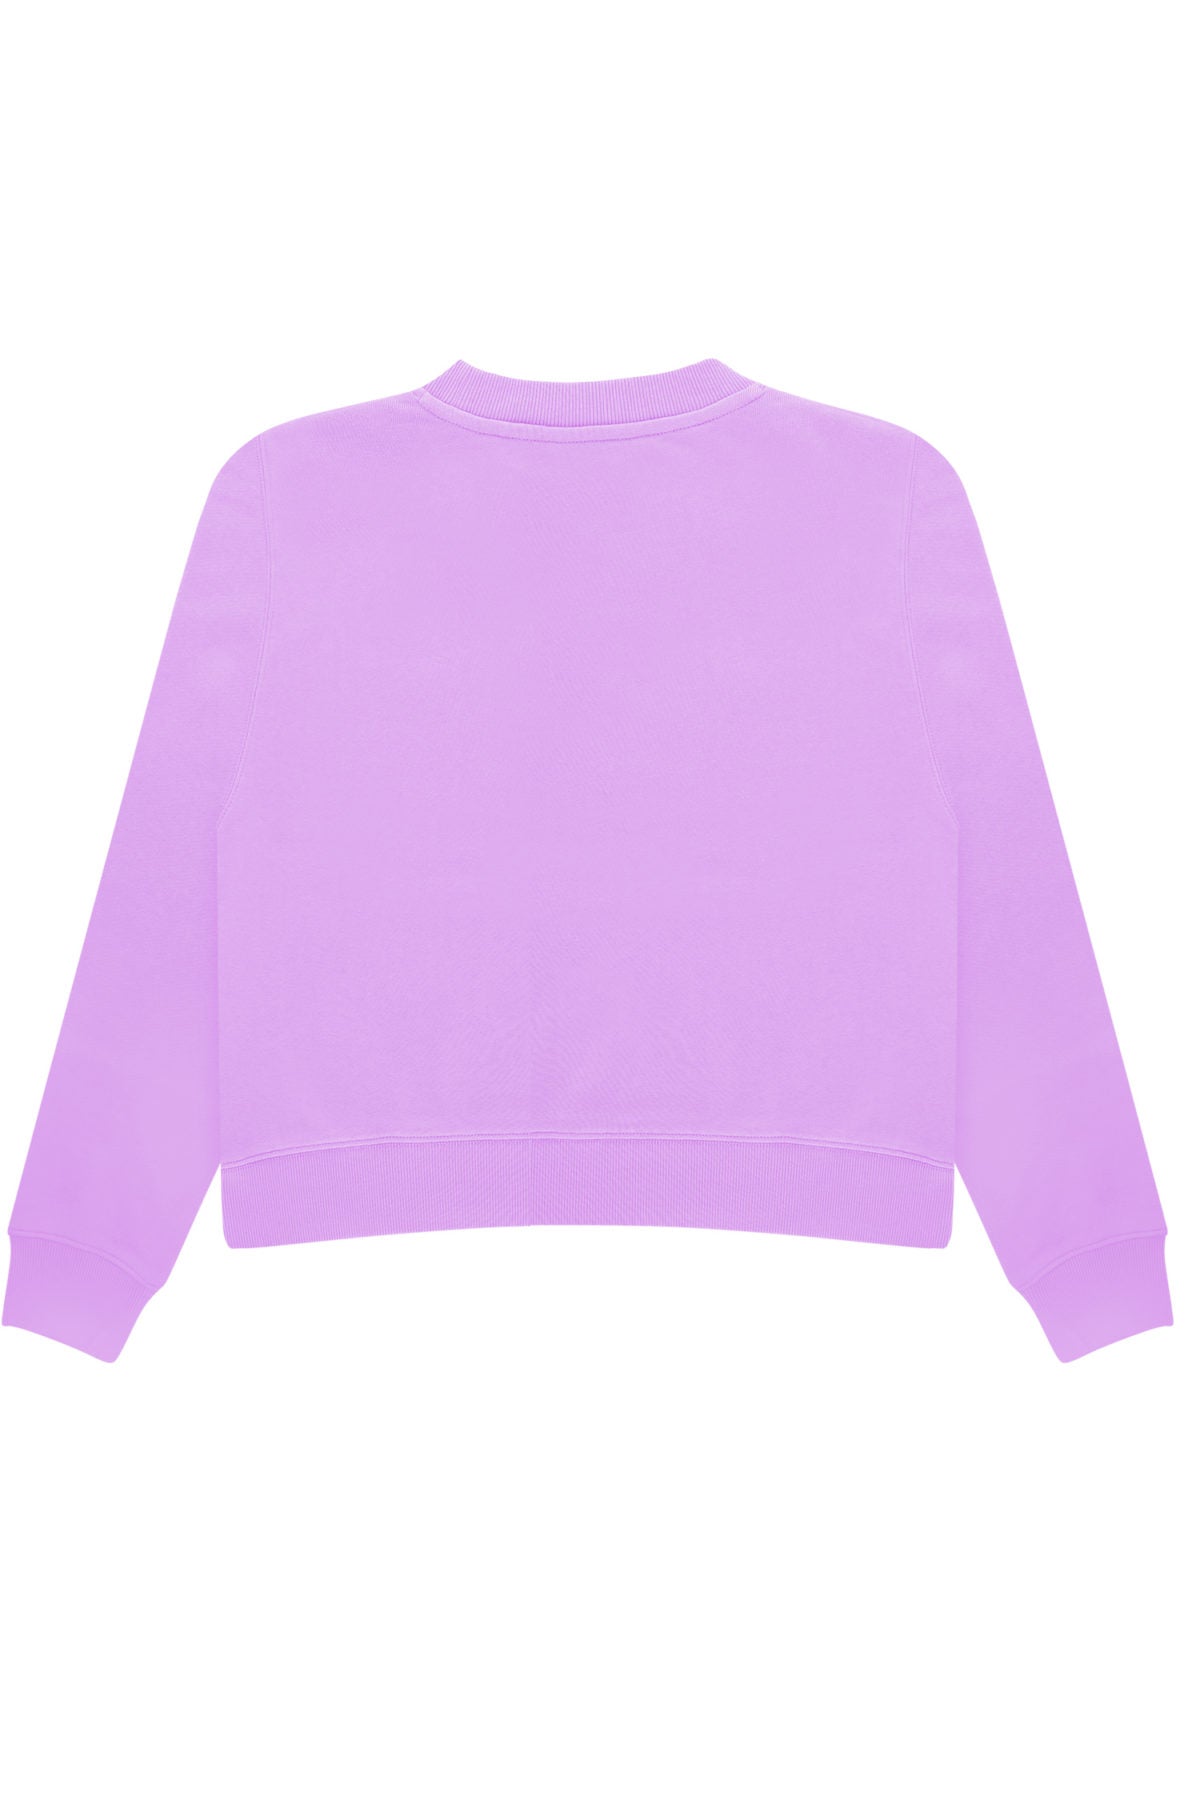 Cotton Crewneck Sweatshirt - Tokyo